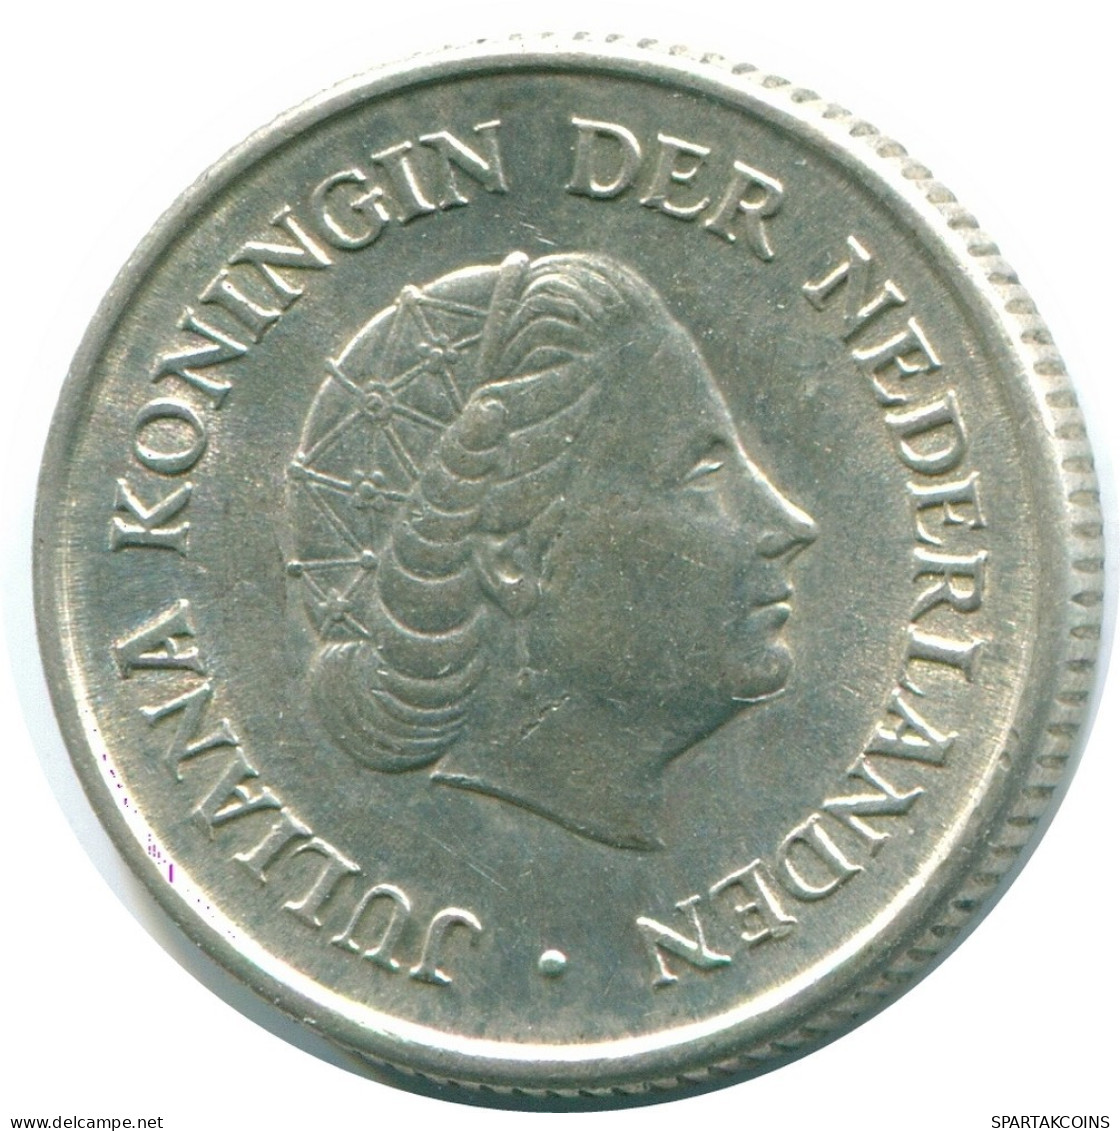 1/4 GULDEN 1967 NIEDERLÄNDISCHE ANTILLEN SILBER Koloniale Münze #NL11440.4.D.A - Nederlandse Antillen